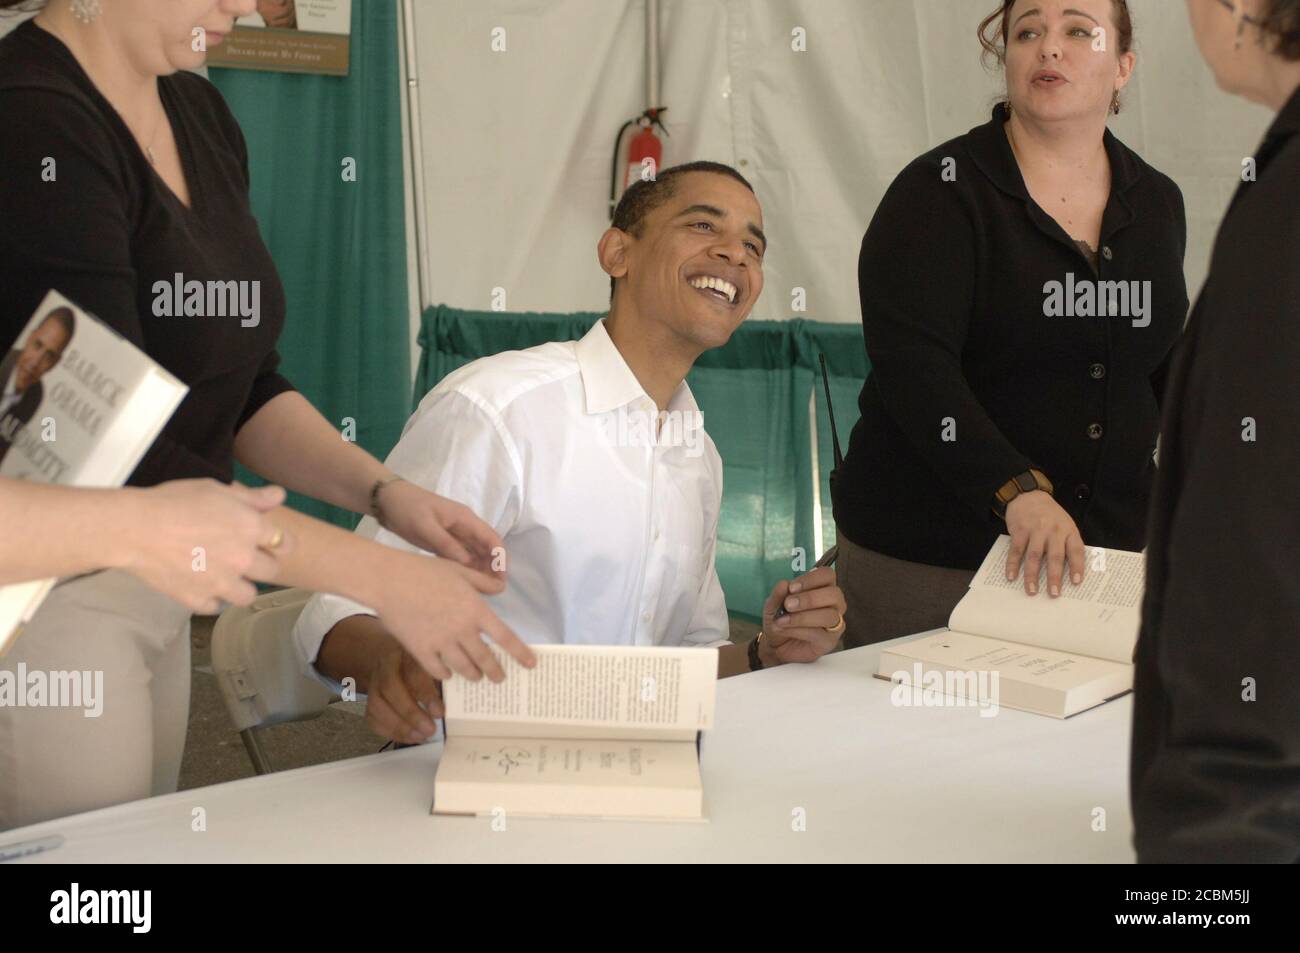 Austin, Texas États-Unis, 28 octobre 2006 : le sénateur Barack Obama (D-Illinois) signe des livres au 11e Festival annuel du livre du Texas à Austin. ©Bob Daemmrich Banque D'Images